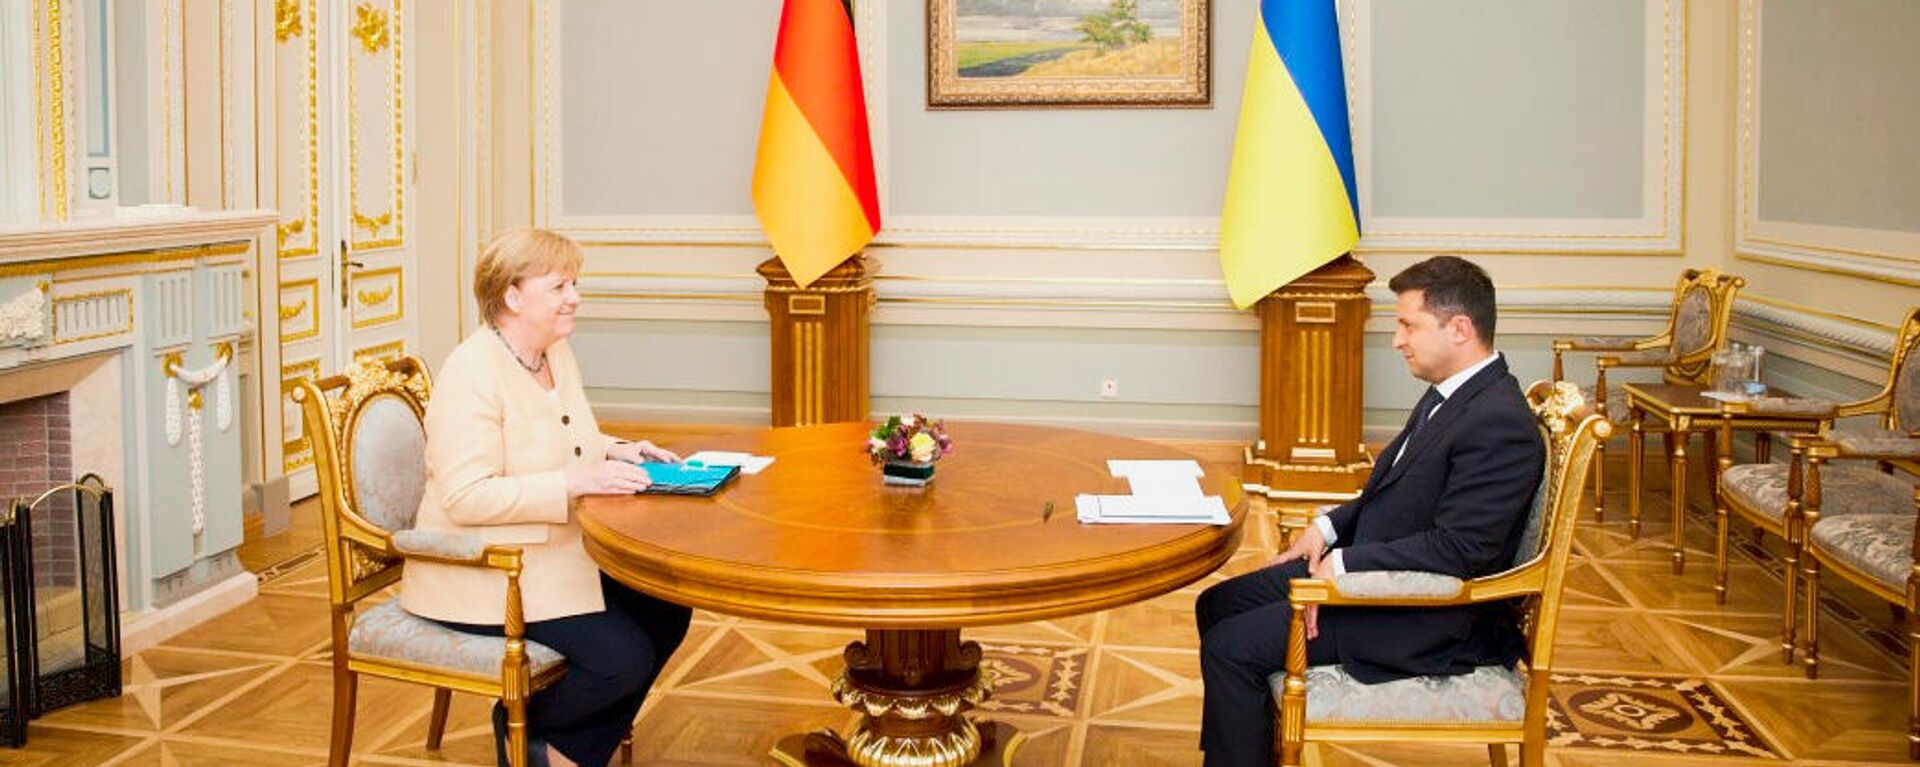 Президент Украины Владимир Зеленский и канцлер Германии Ангела Меркель во время встречи в Киеве - Sputnik Latvija, 1920, 17.12.2021